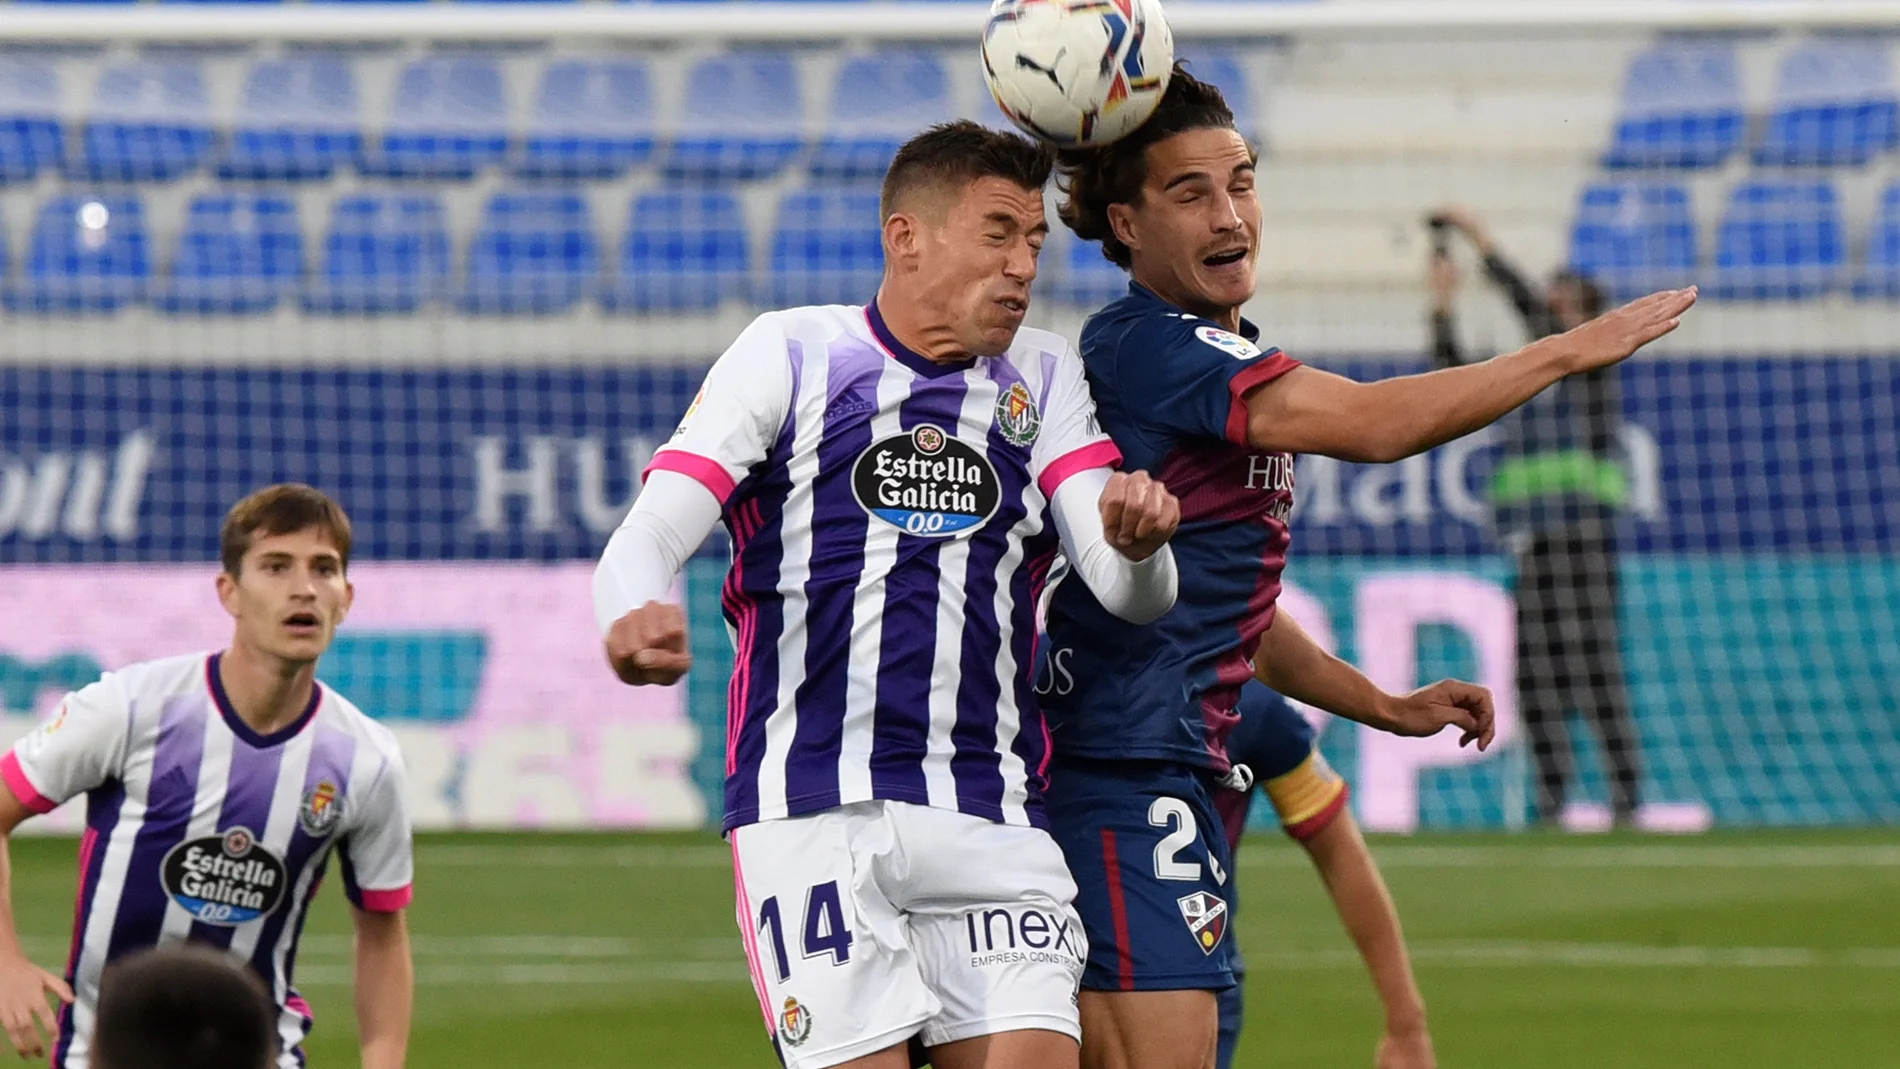 El centrocampista del Huesca Jaime Seoane (d) salta a por un balón con Rubén Alcaraz (c), del Valladolid, durante el partido de Liga en Primera División que disputan este domingo en el estadio de El Alcoraz, en Huesca. EFE/Javier Blasco